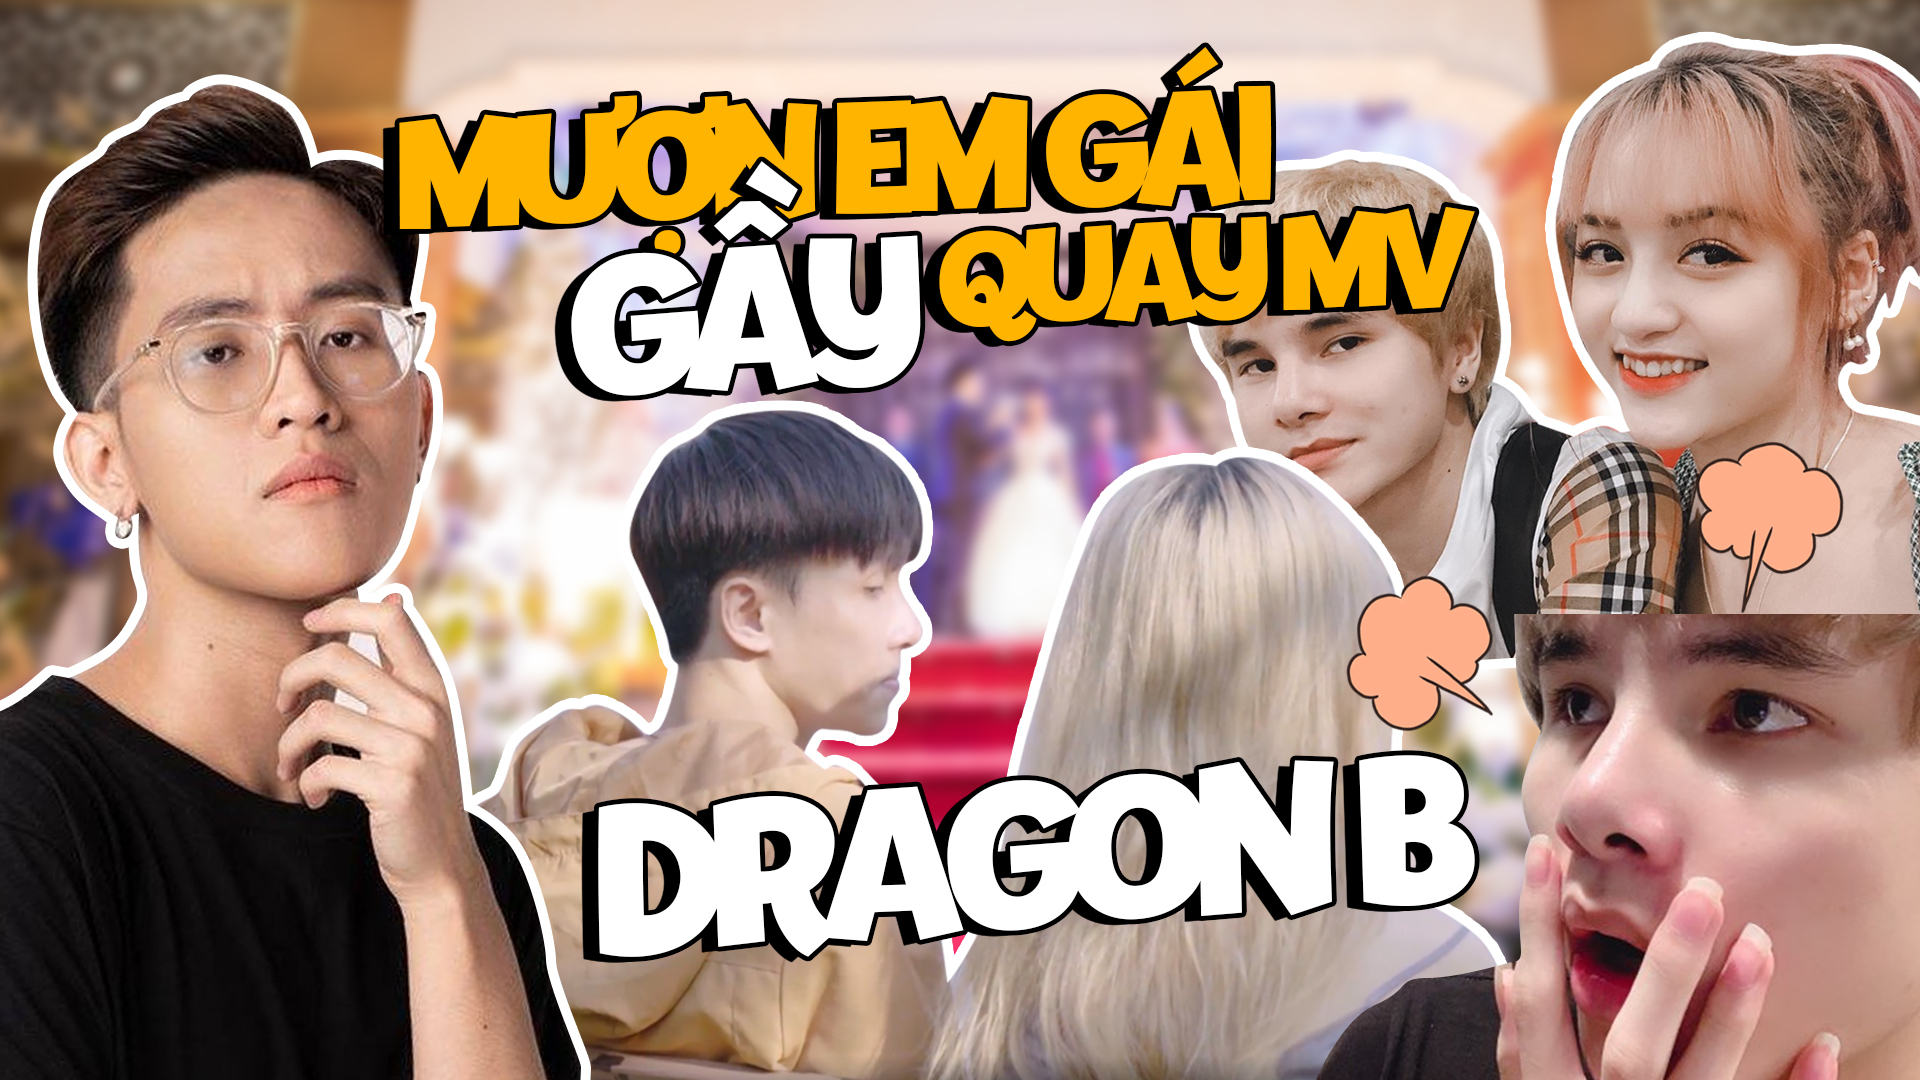 Dragon B 'tình tứ' với em gái Gầy Best Leesin trong MV cover mới